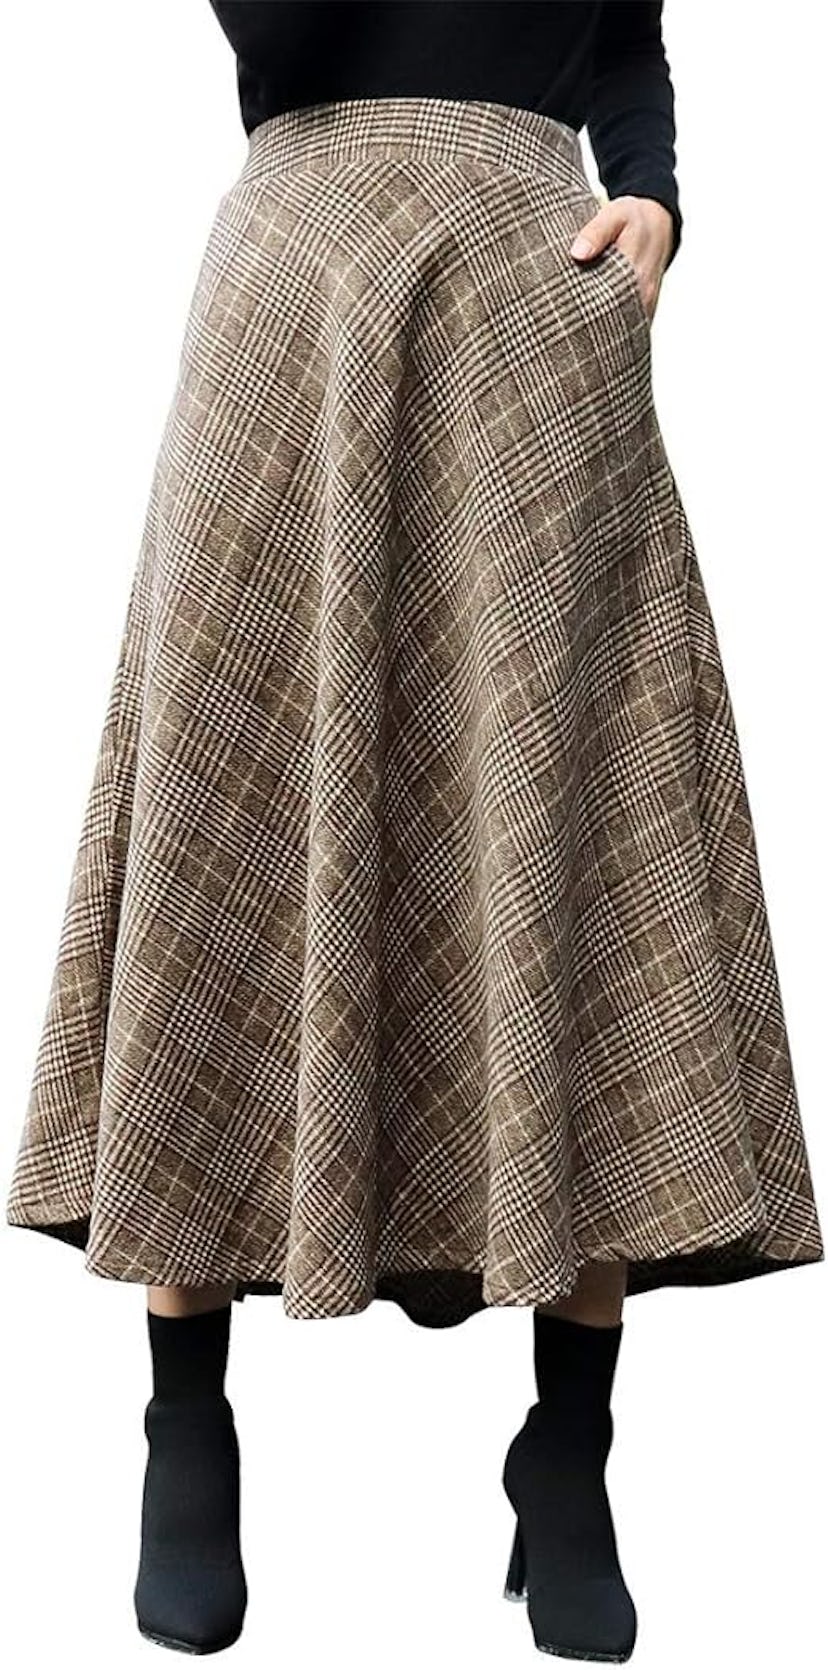 IDEALSANXUN Women’s Plaid Wool Skirt